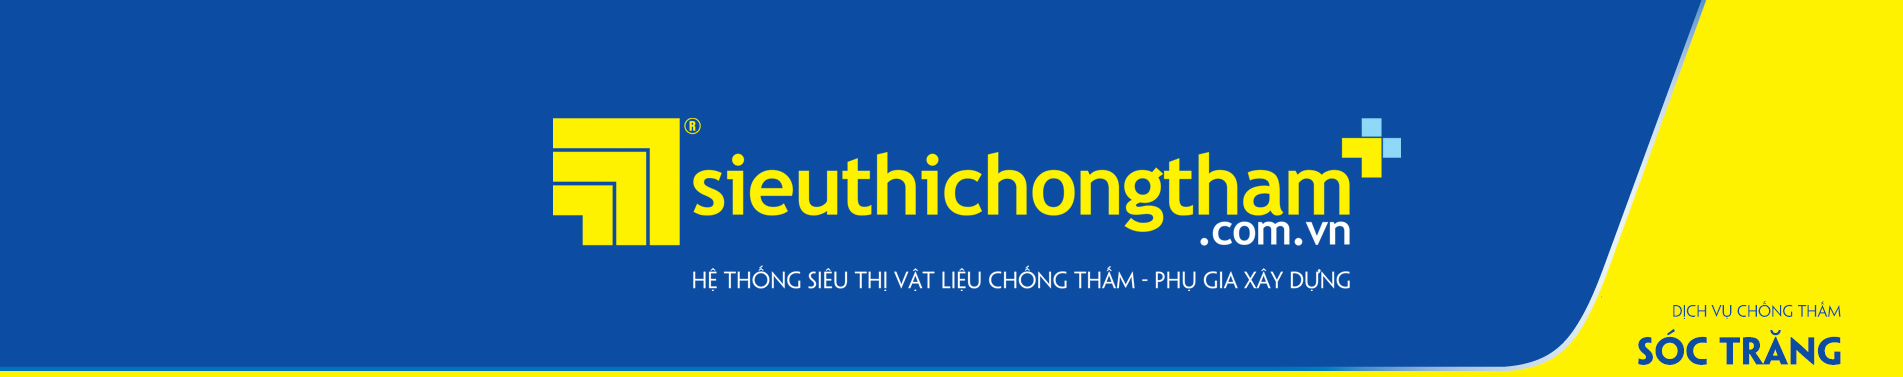 Dich Vu Chong Tham Soc Trang